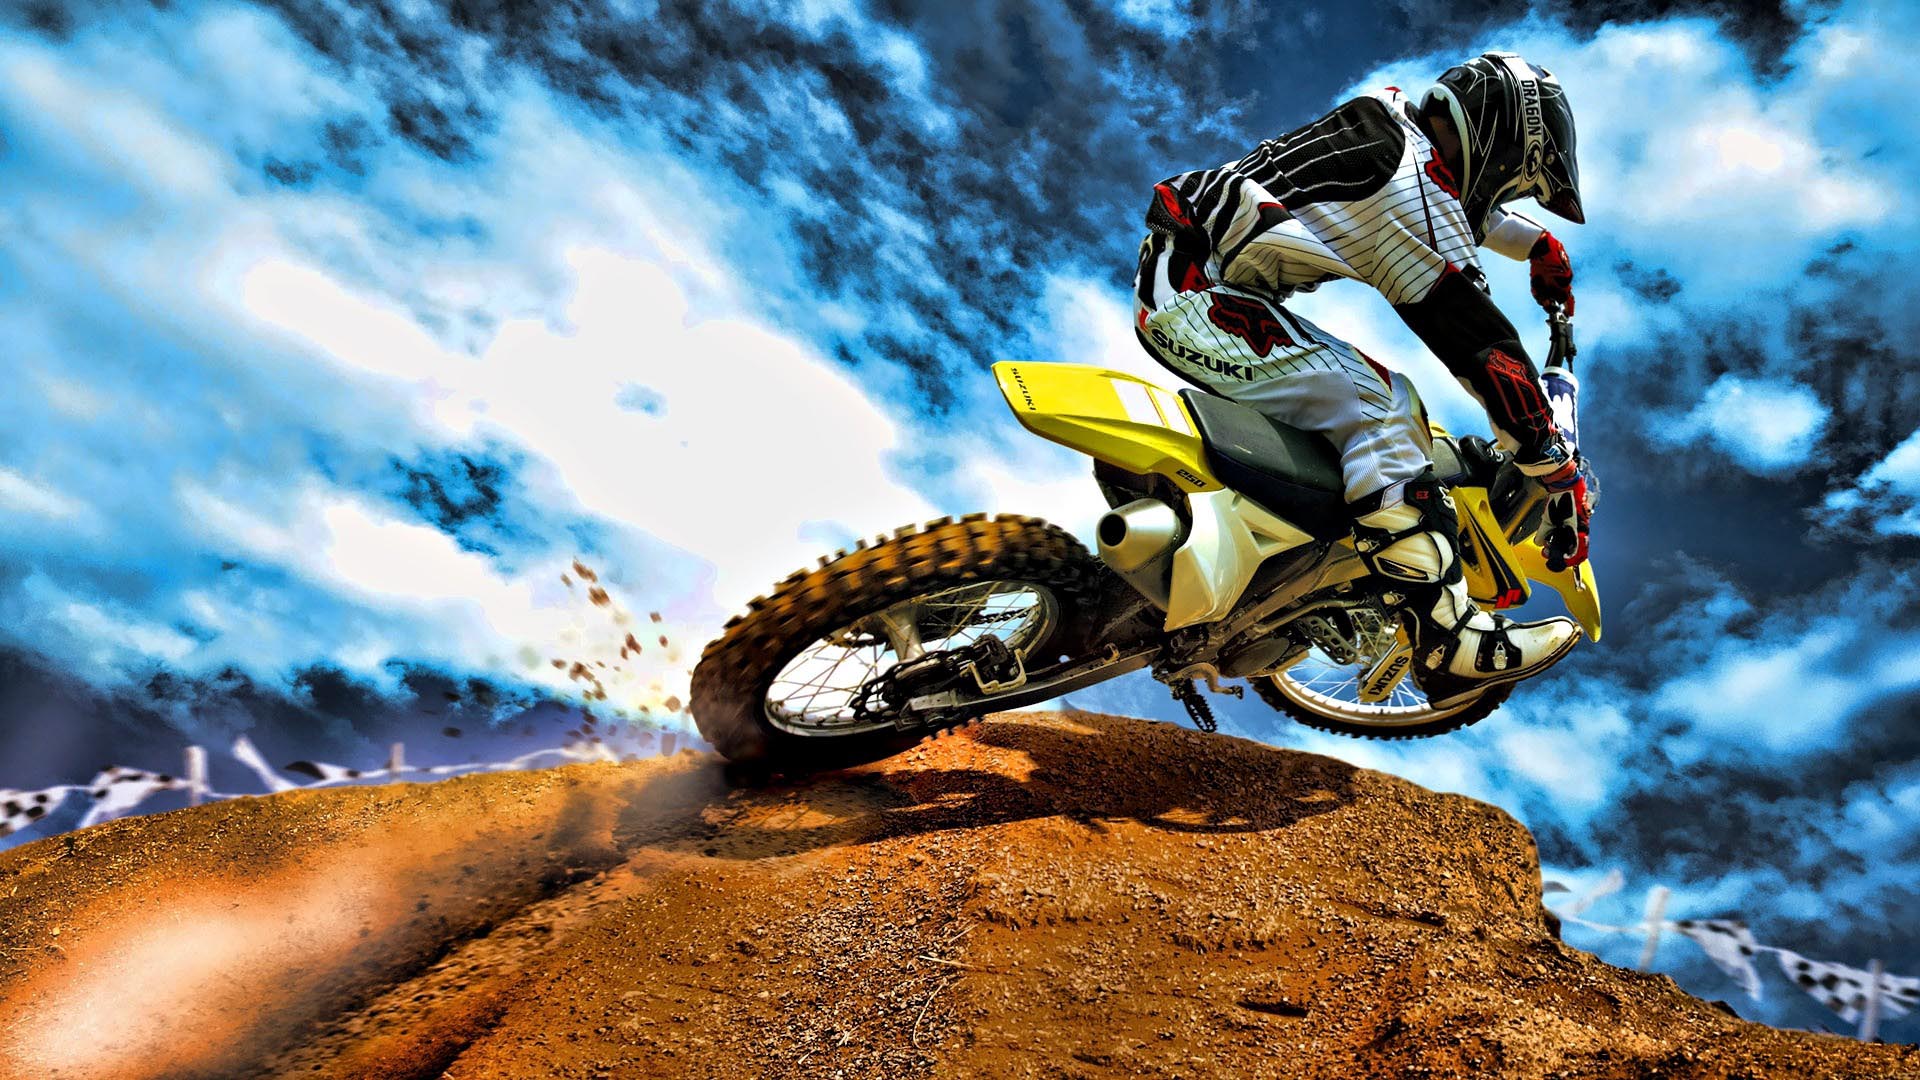 Motocross HDr Bike HD Wallpaper FullHDwpp Full